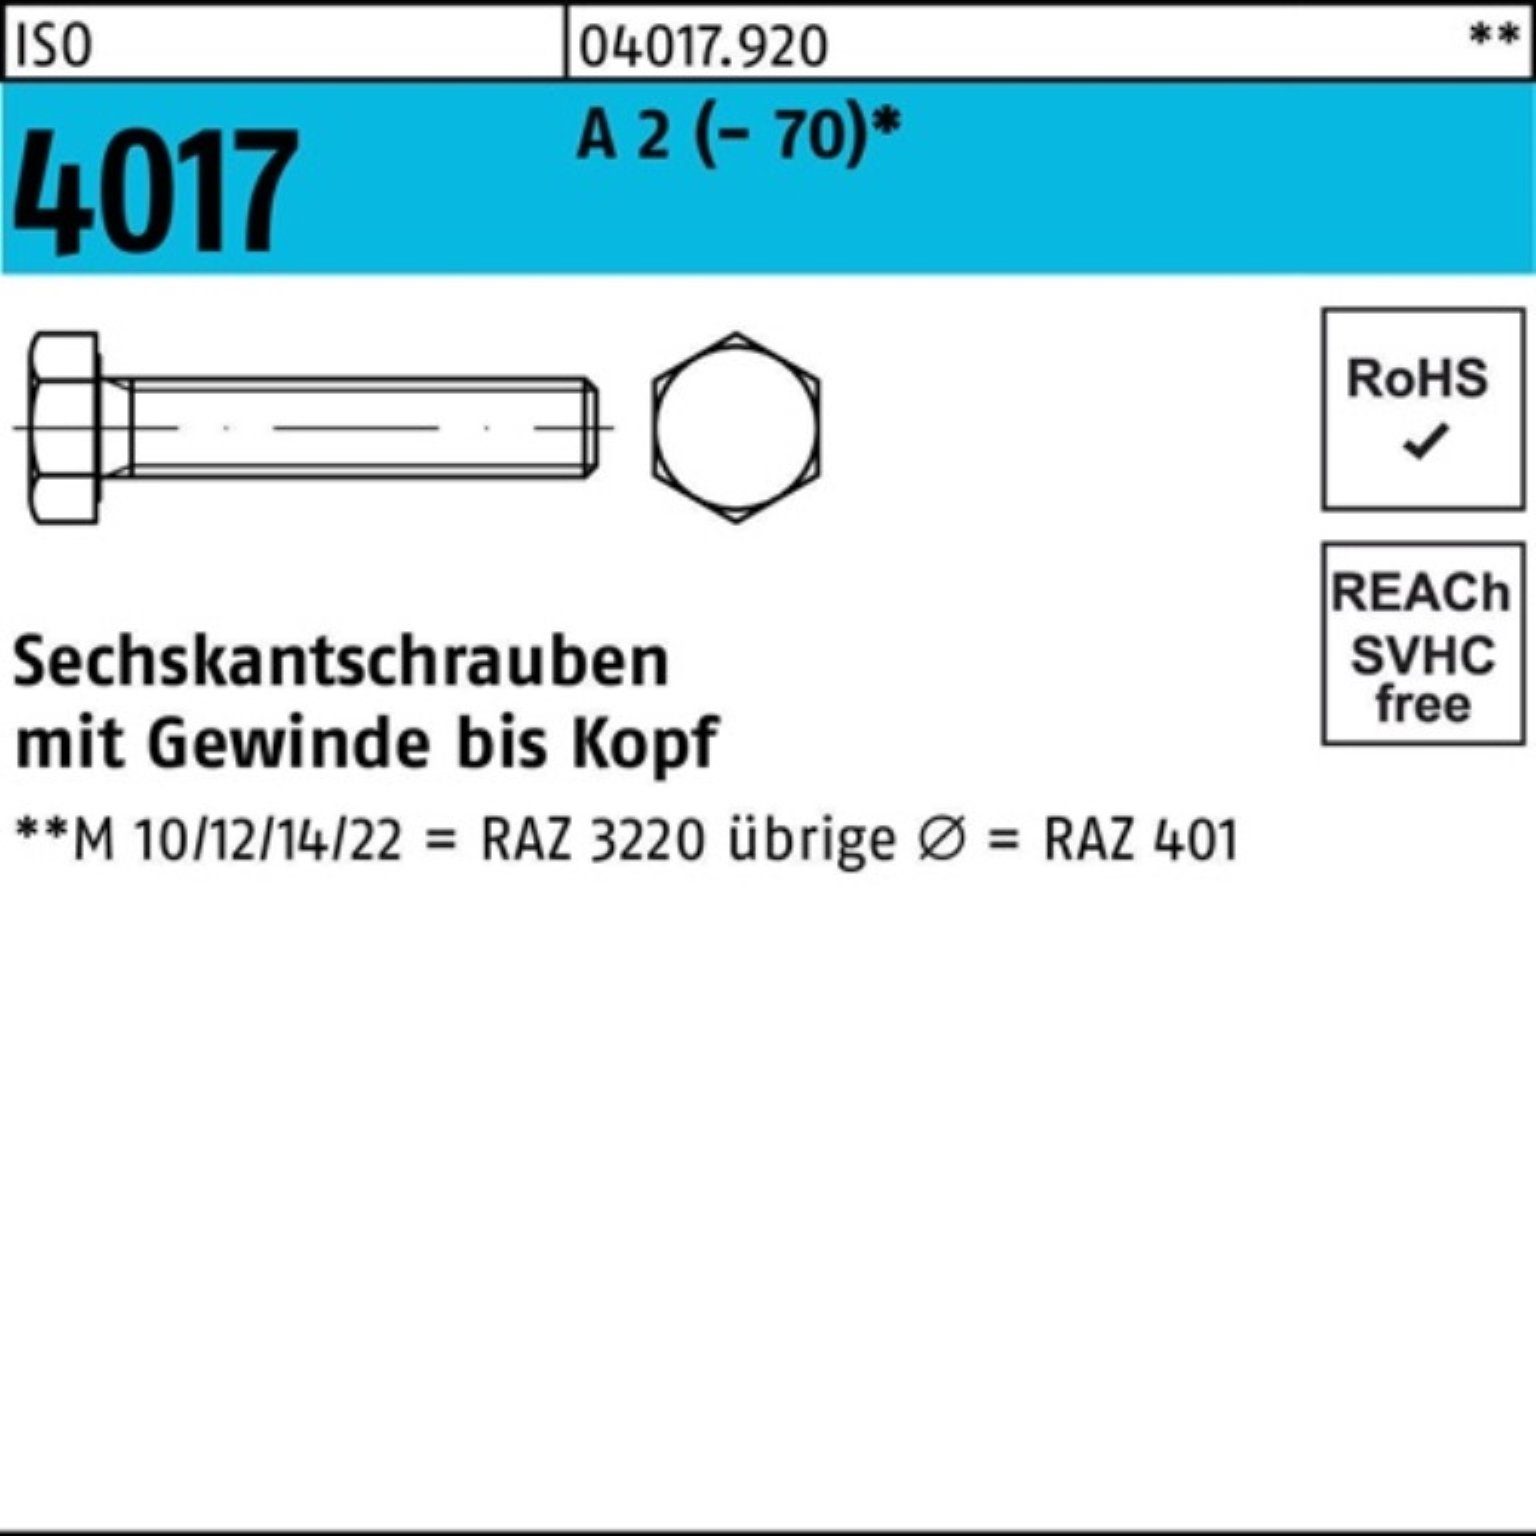 Bufab Sechskantschraube 100er Pack Sechskantschraube M3x 2 Stück 100 VG 4017 30 ISO (70) A